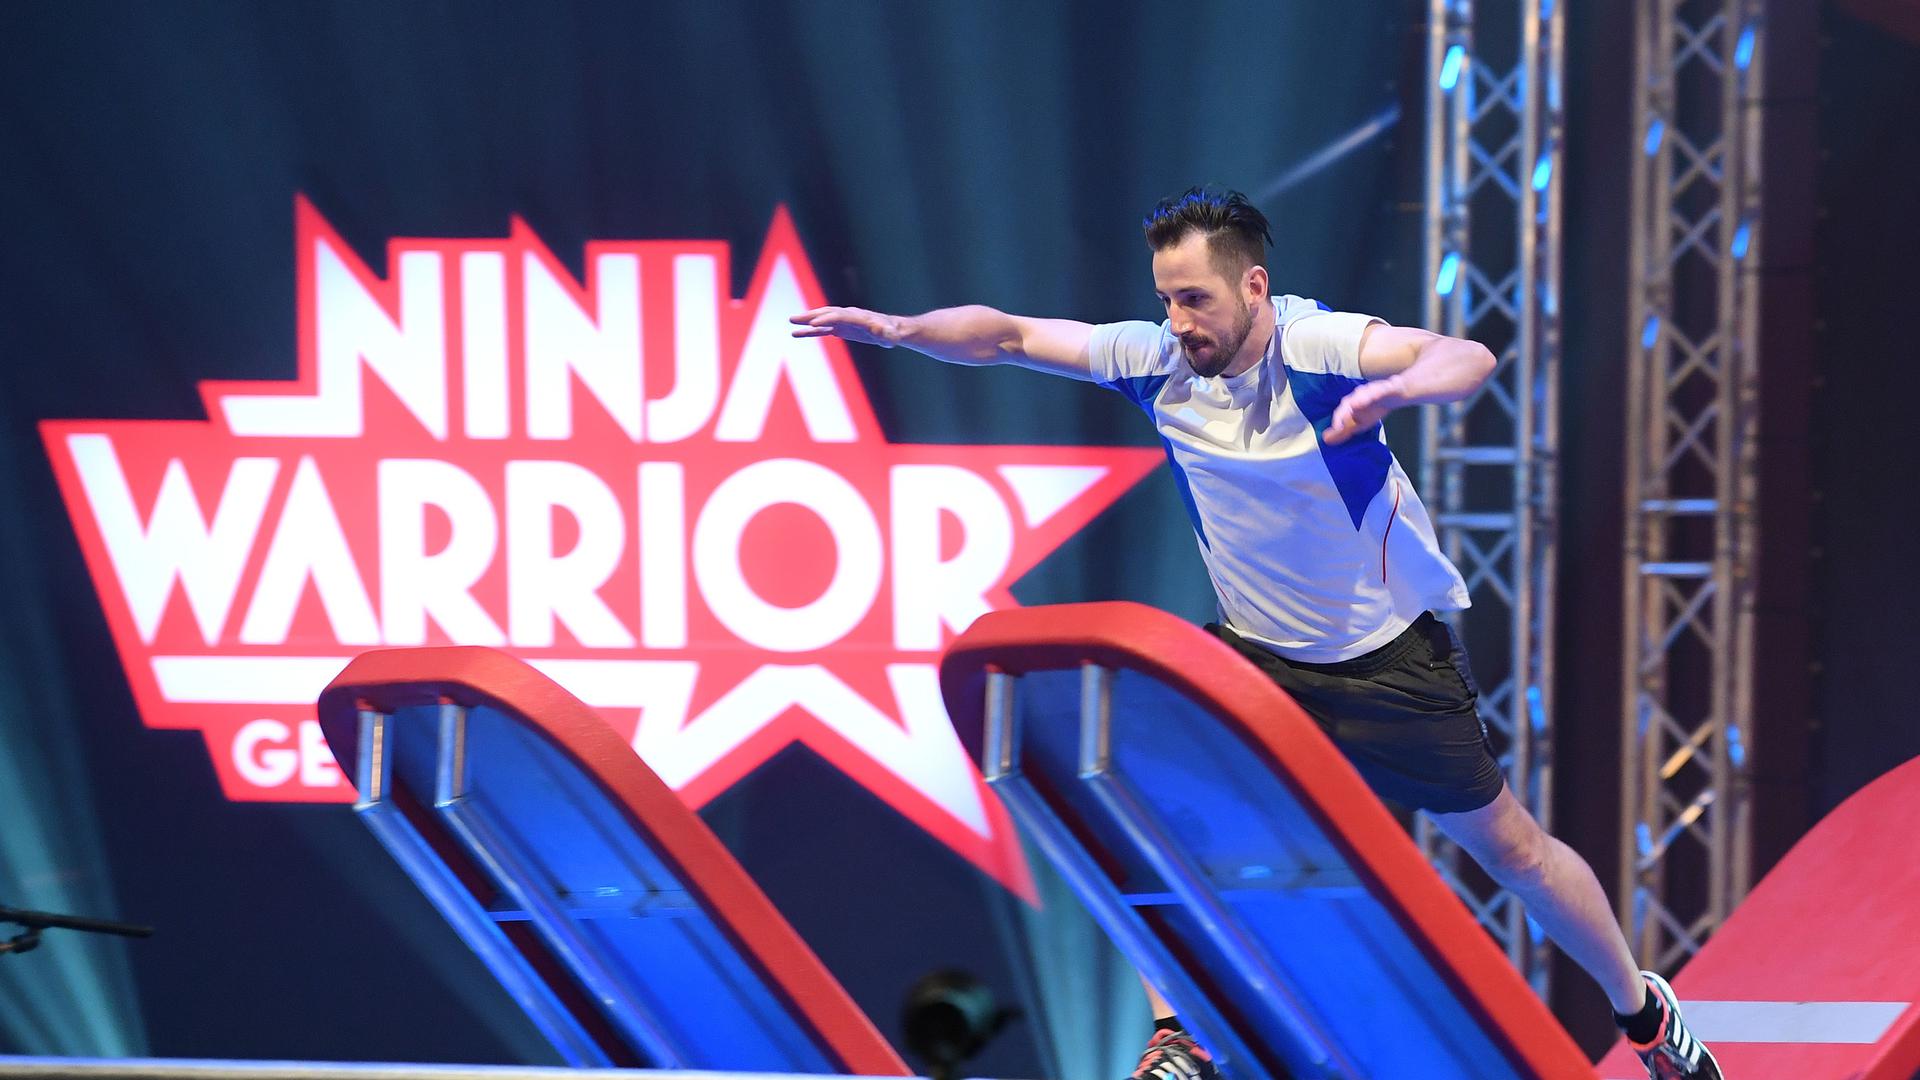 Die Show „Ninja Warrior Germany“, die von 2015 bis 2019 in der Messe Karlsruhe aufgezeichnet wurde, ist beim Fernsehsender RTL eine feste Größe. In absehbarer Zukunft könnten Elemente der Ninja-Parcours beim Fünfkampf Olympia-Premiere feiern.